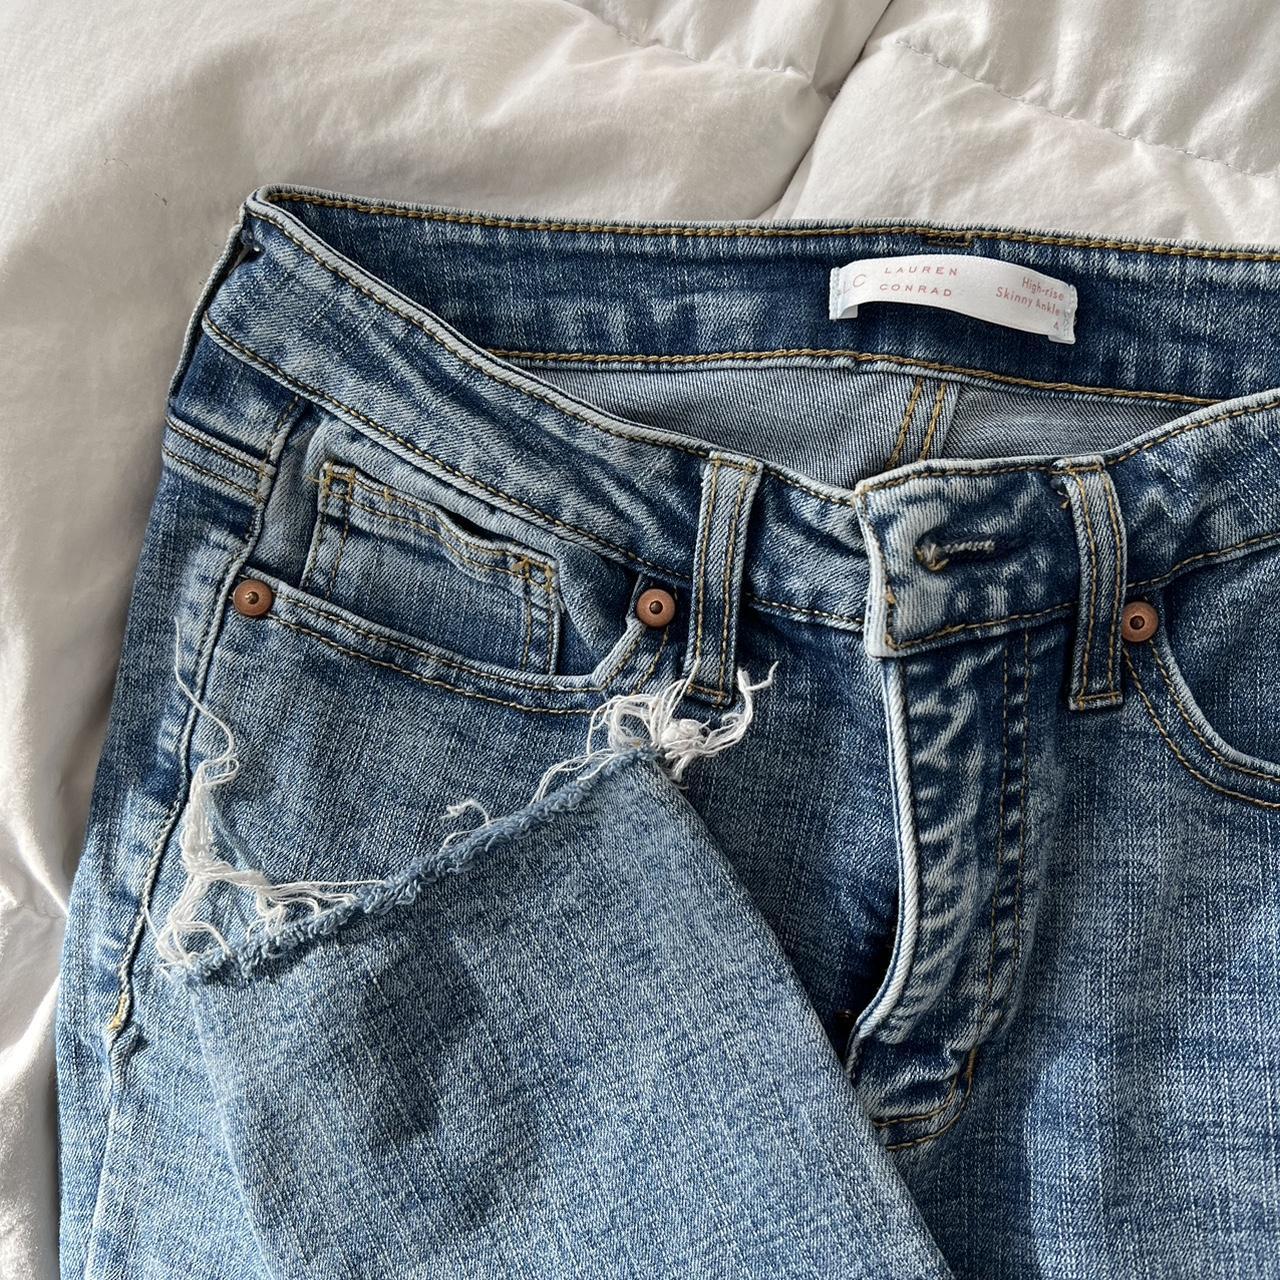 lauren conrad jeans , size 4, #denim #jeans #stonewash